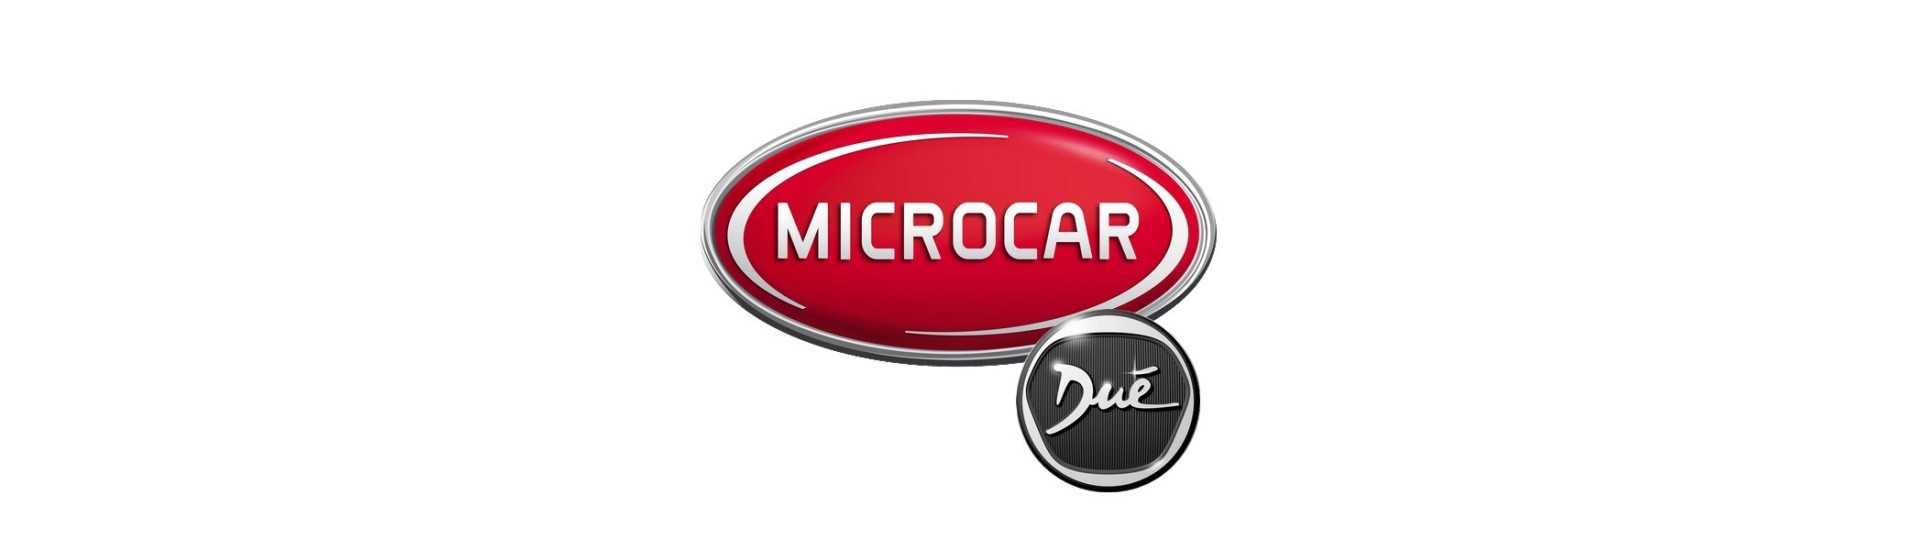 Bromsdelare till bästa prisbil utan tillstånd Microcar Dué